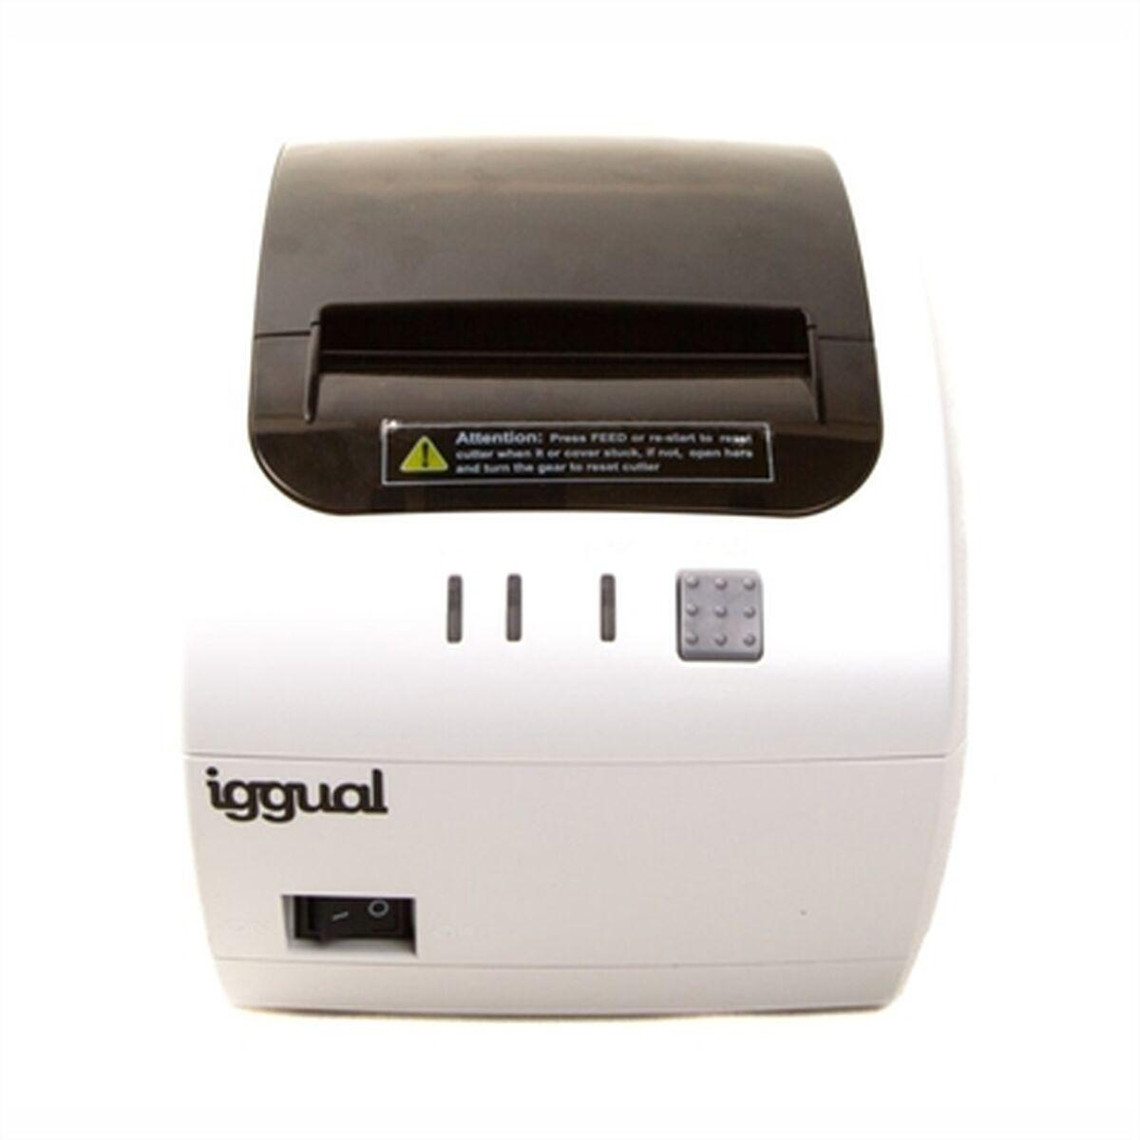 Iggual Imprimante Thermique iggual TP7001 Blanc